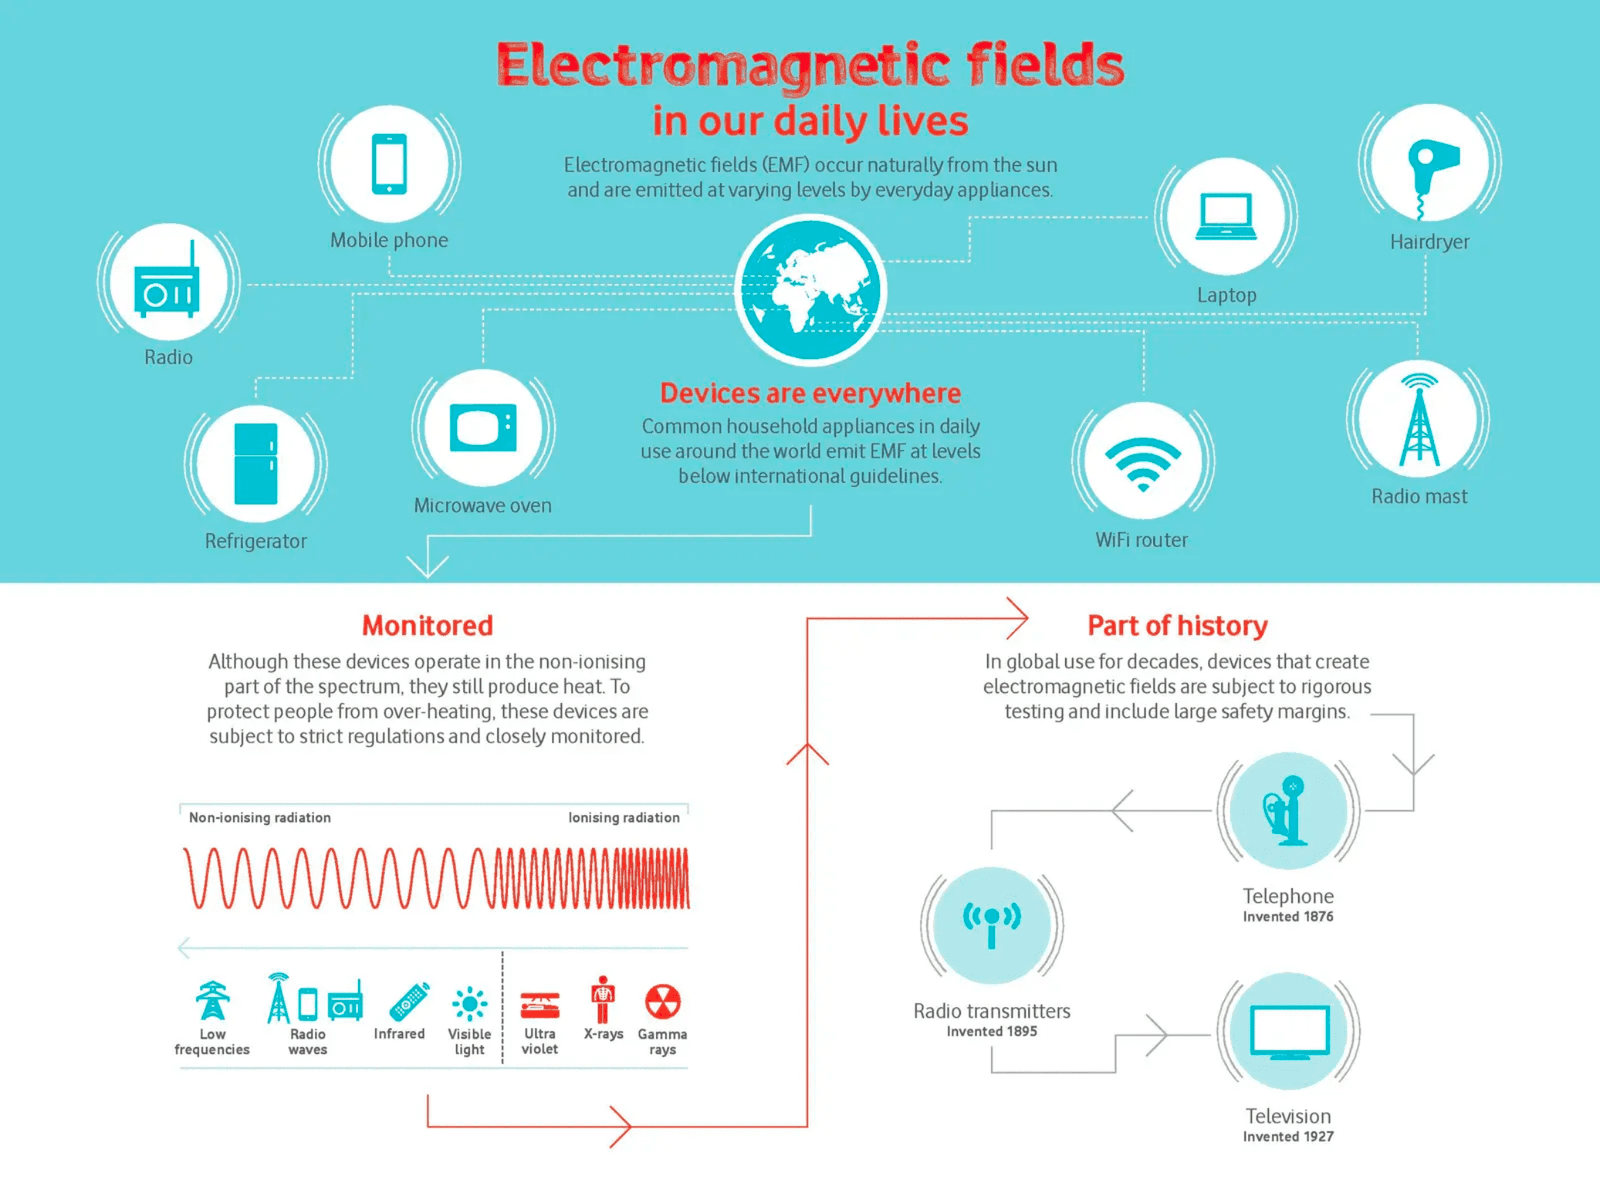 Vodafone Electromagnetic fields